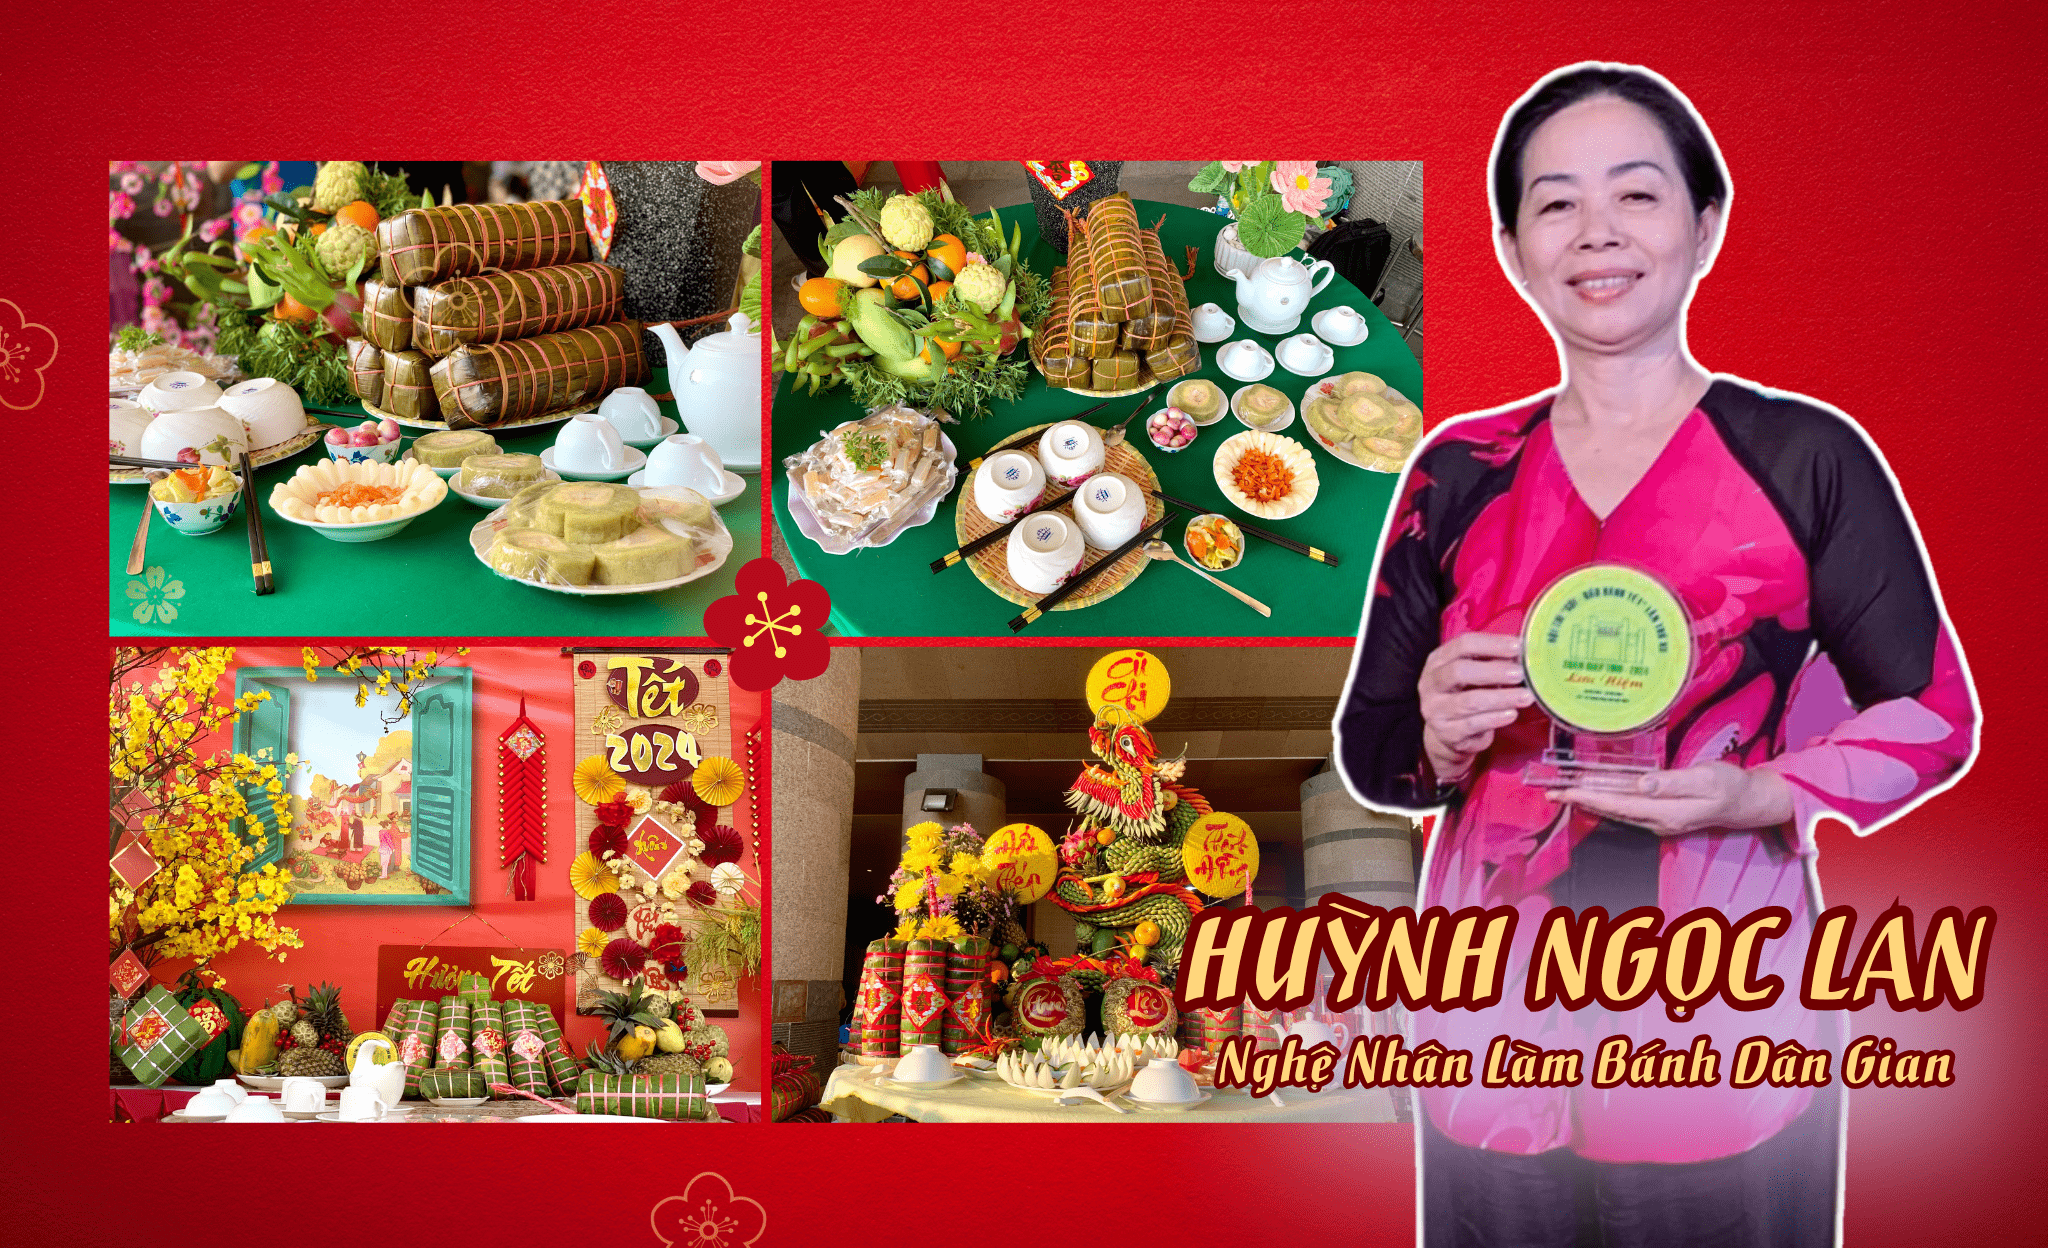 Nghệ nhân Huỳnh Ngọc Lan: Bánh Tét - Món quà quê của người dân Nam Bộ